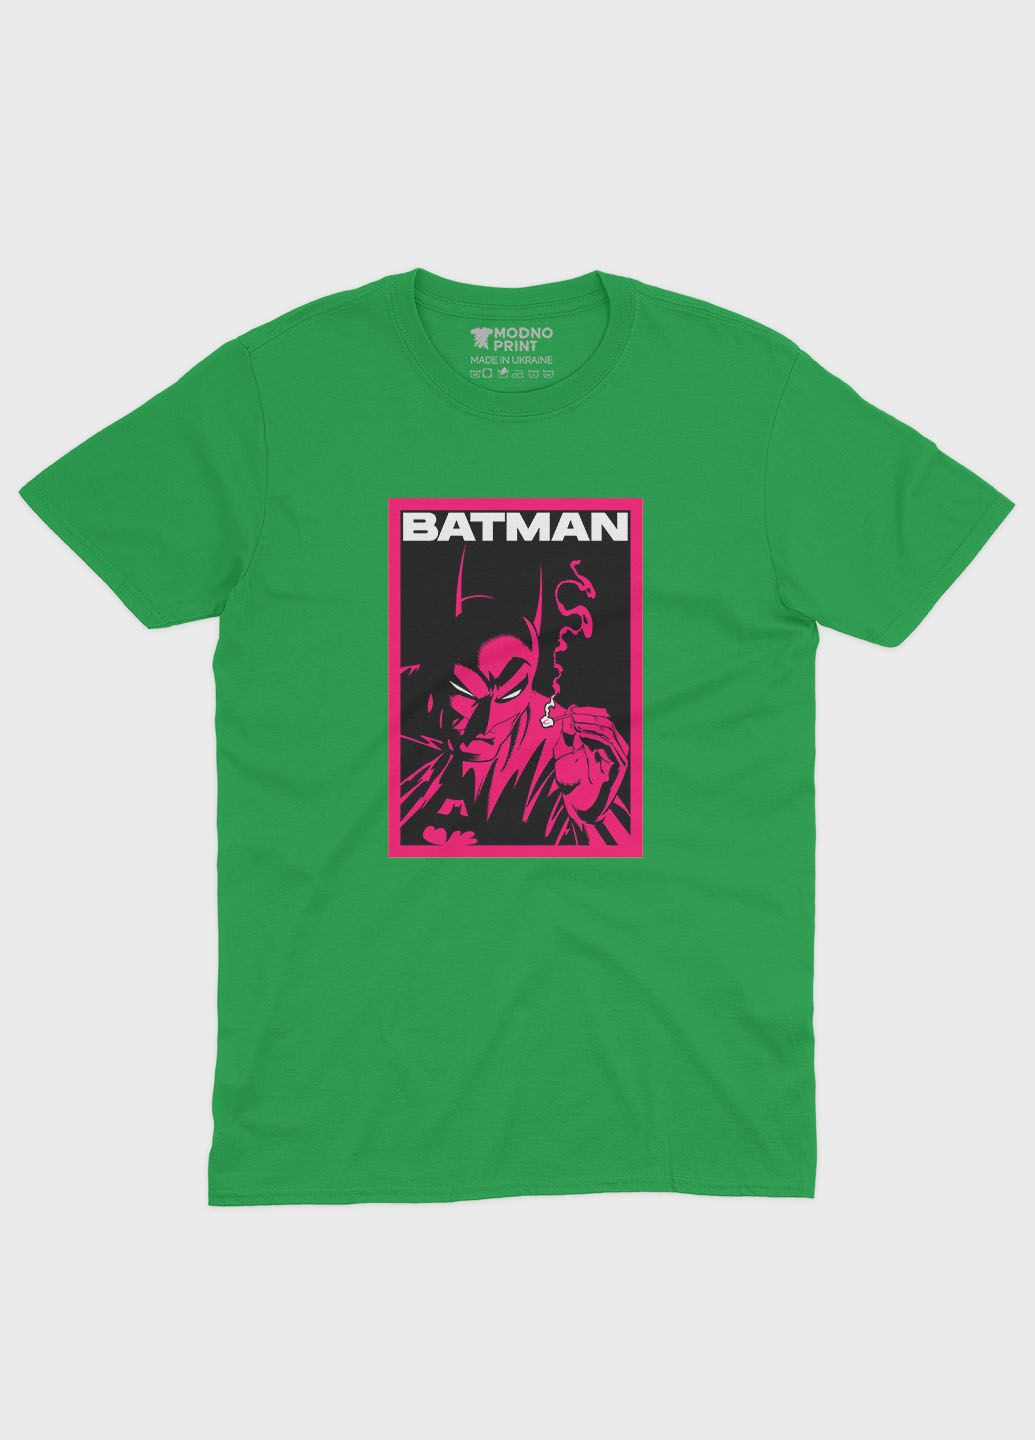 Зеленая демисезонная футболка для мальчика с принтом супергероя - бэтмен (ts001-1-keg-006-003-023-b) Modno